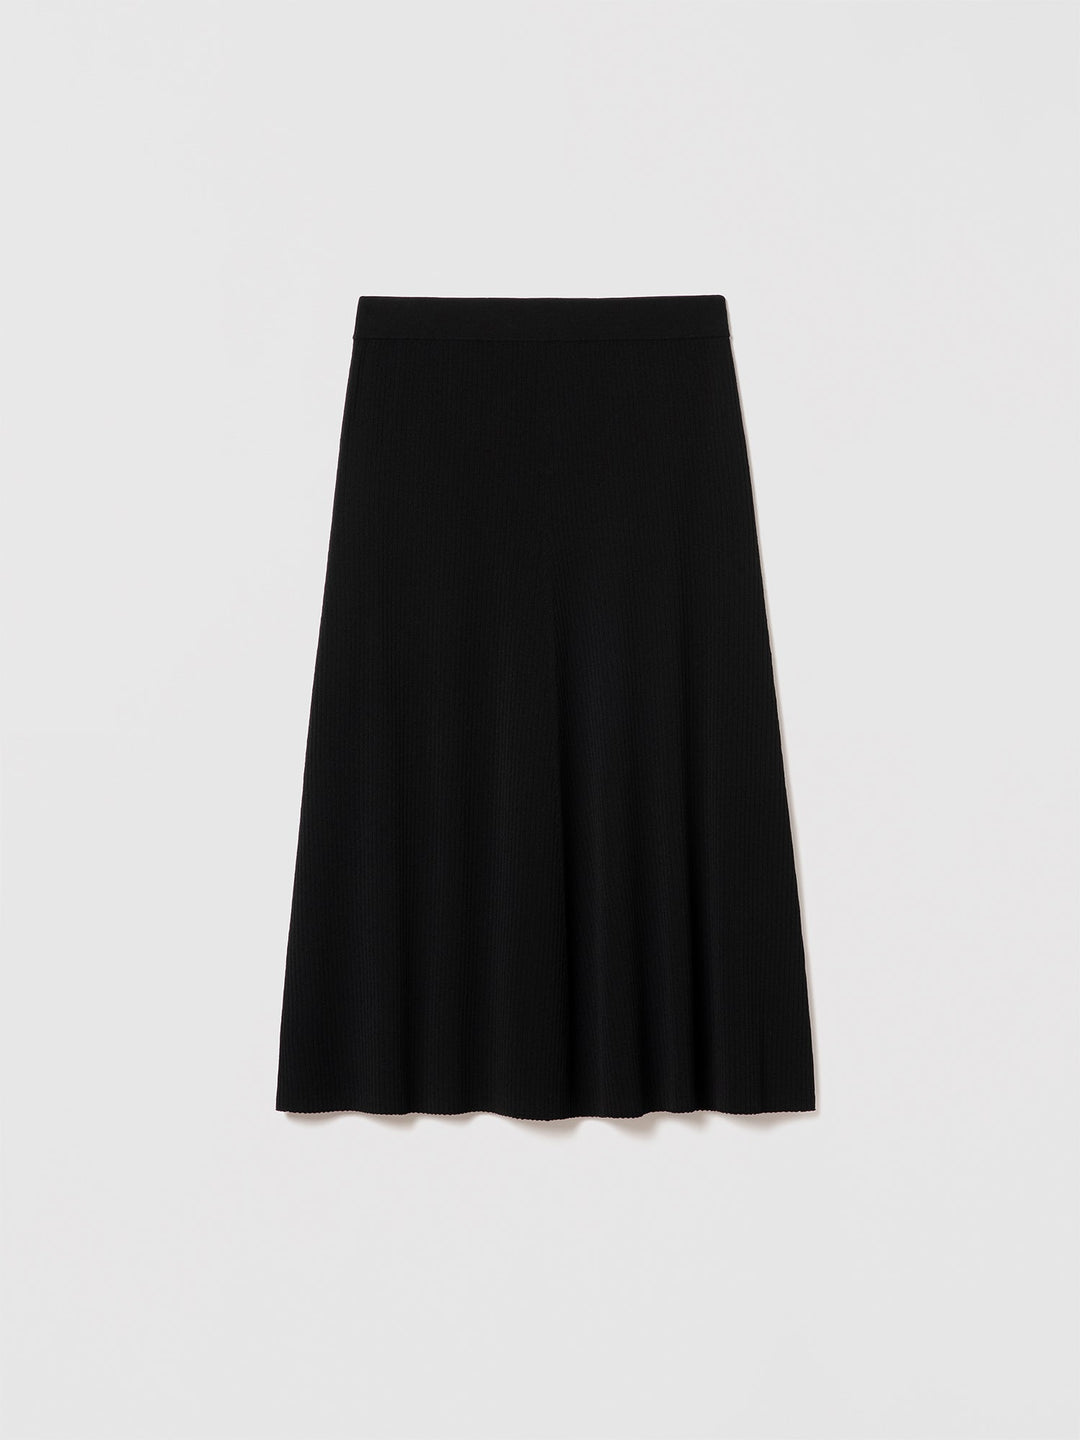 Lecco Skirt